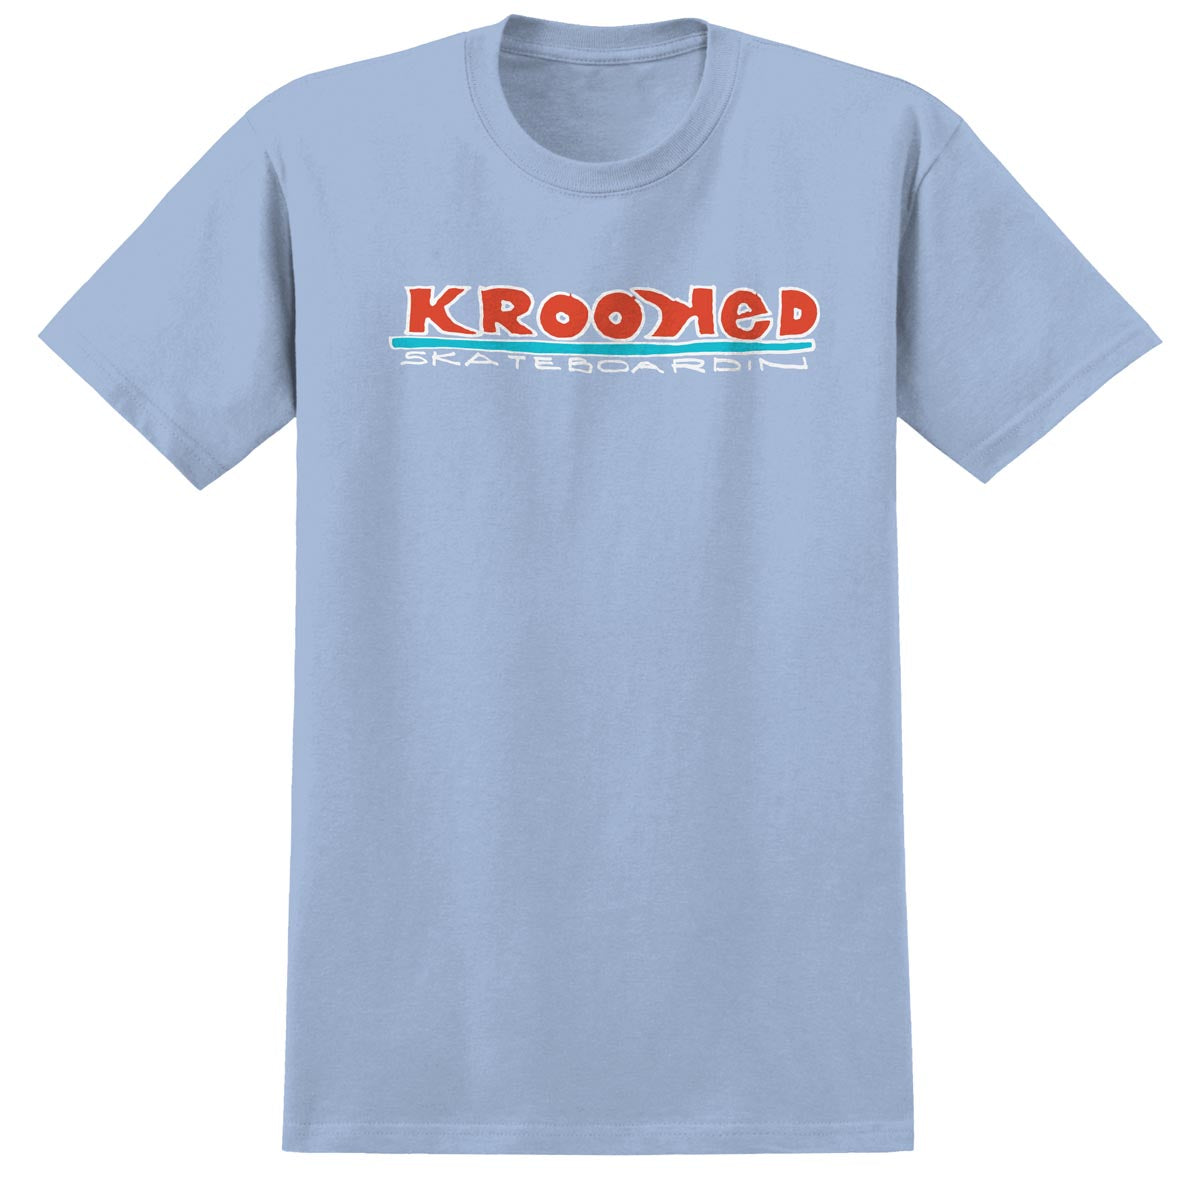 Krooked Skateboardin T-Shirt - Light Blue/Red/White/Blue image 1